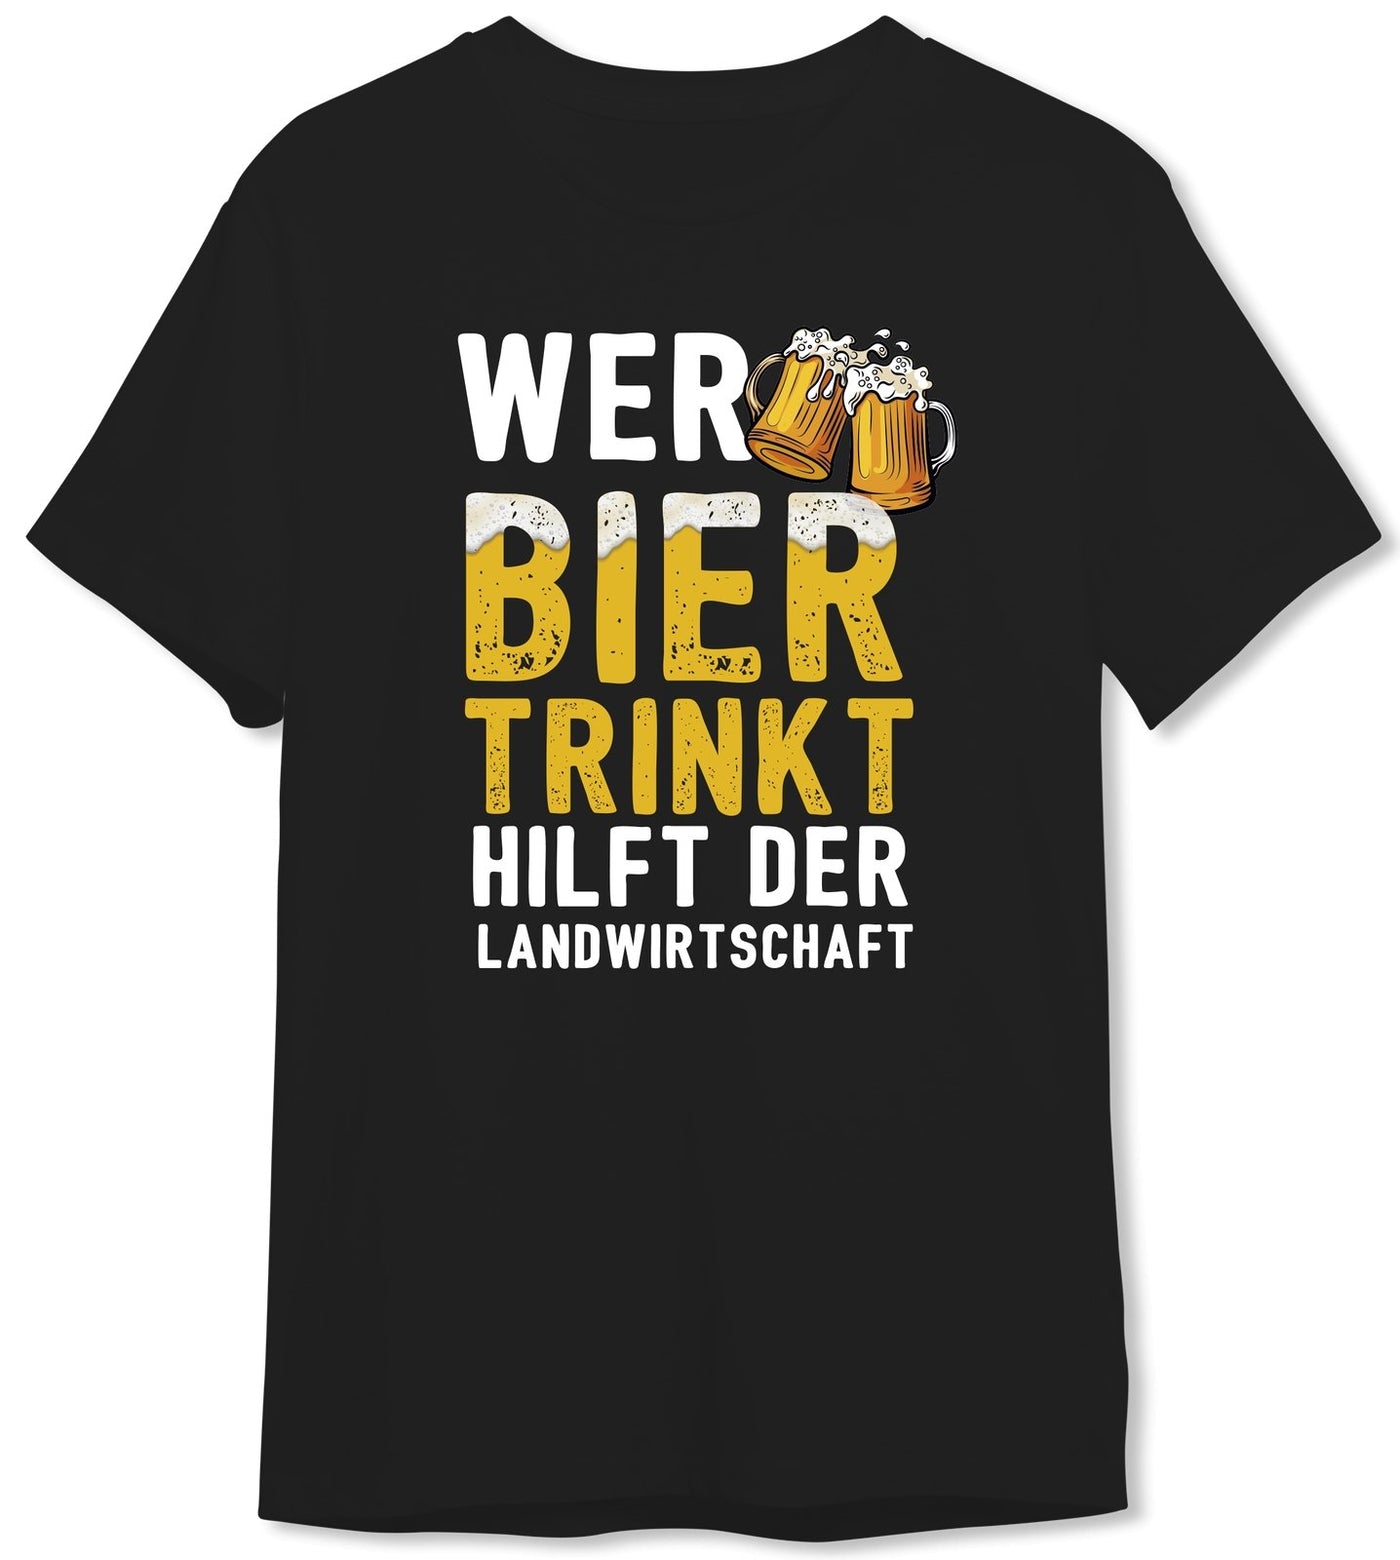 Bild: T-Shirt Herren - Wer Bier trinkt hilft der Landwirtschaft - V2 Geschenkidee